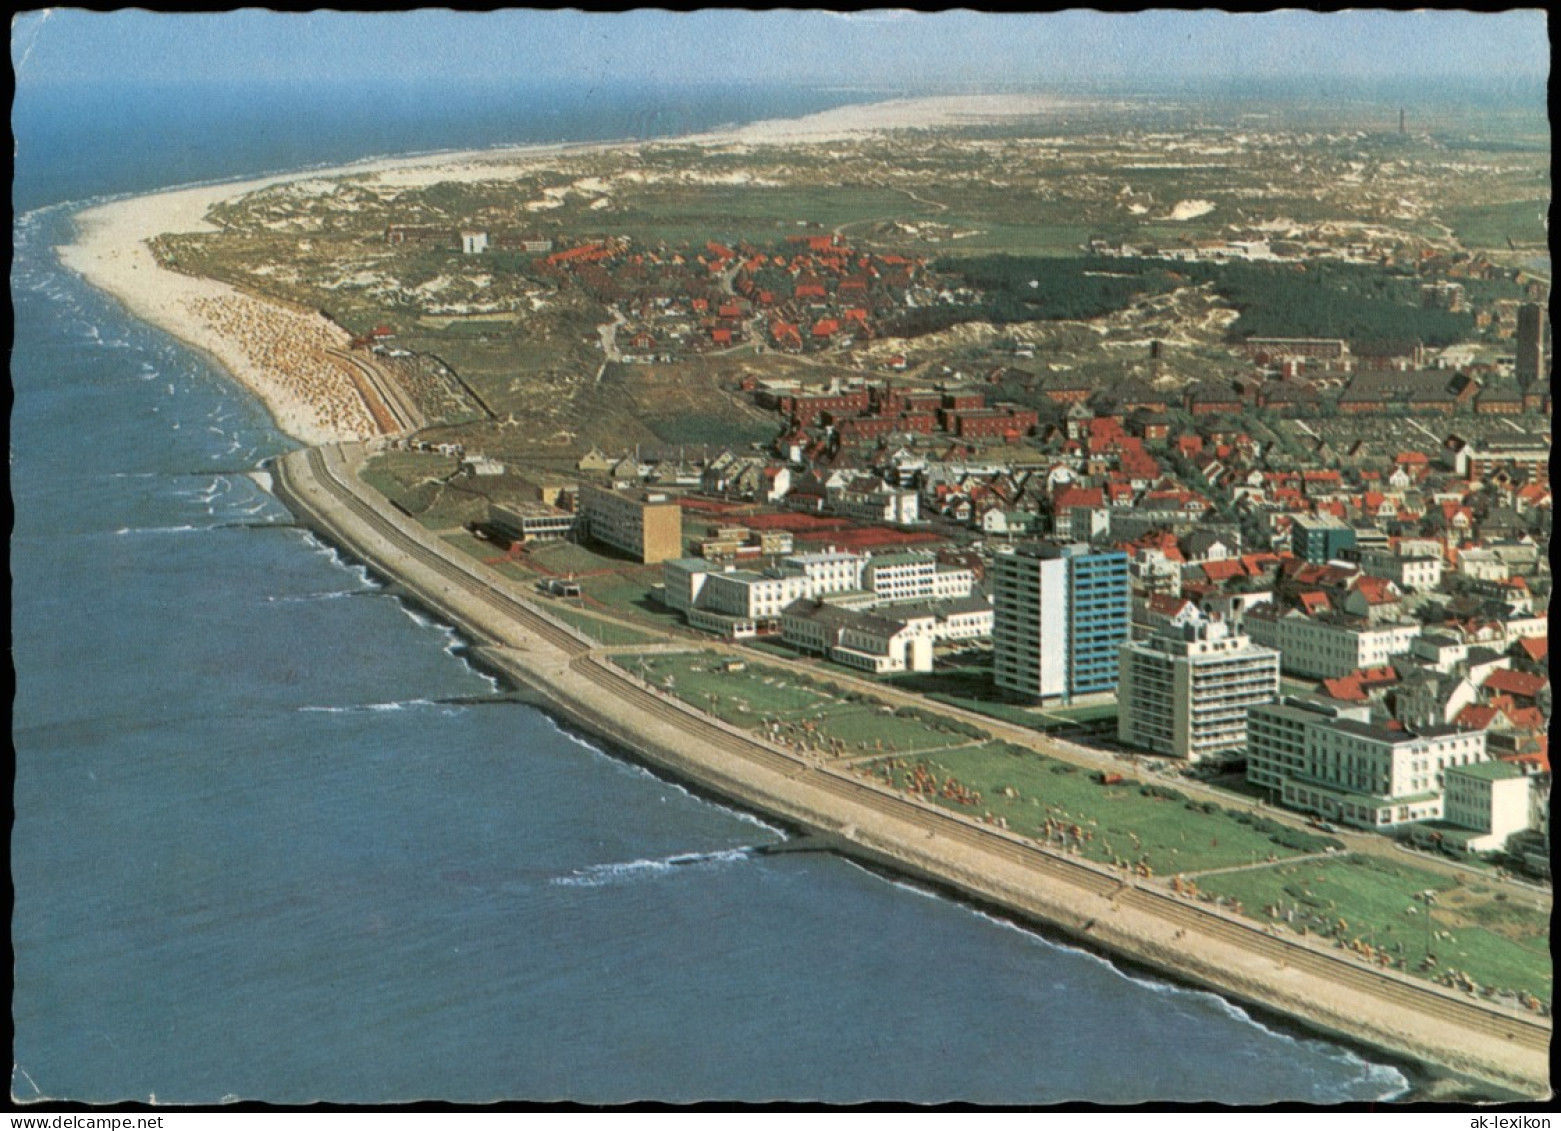 Ansichtskarte Norderney Luftbild Luftaufnahme Von Nordwesten Aus 1975 - Norderney